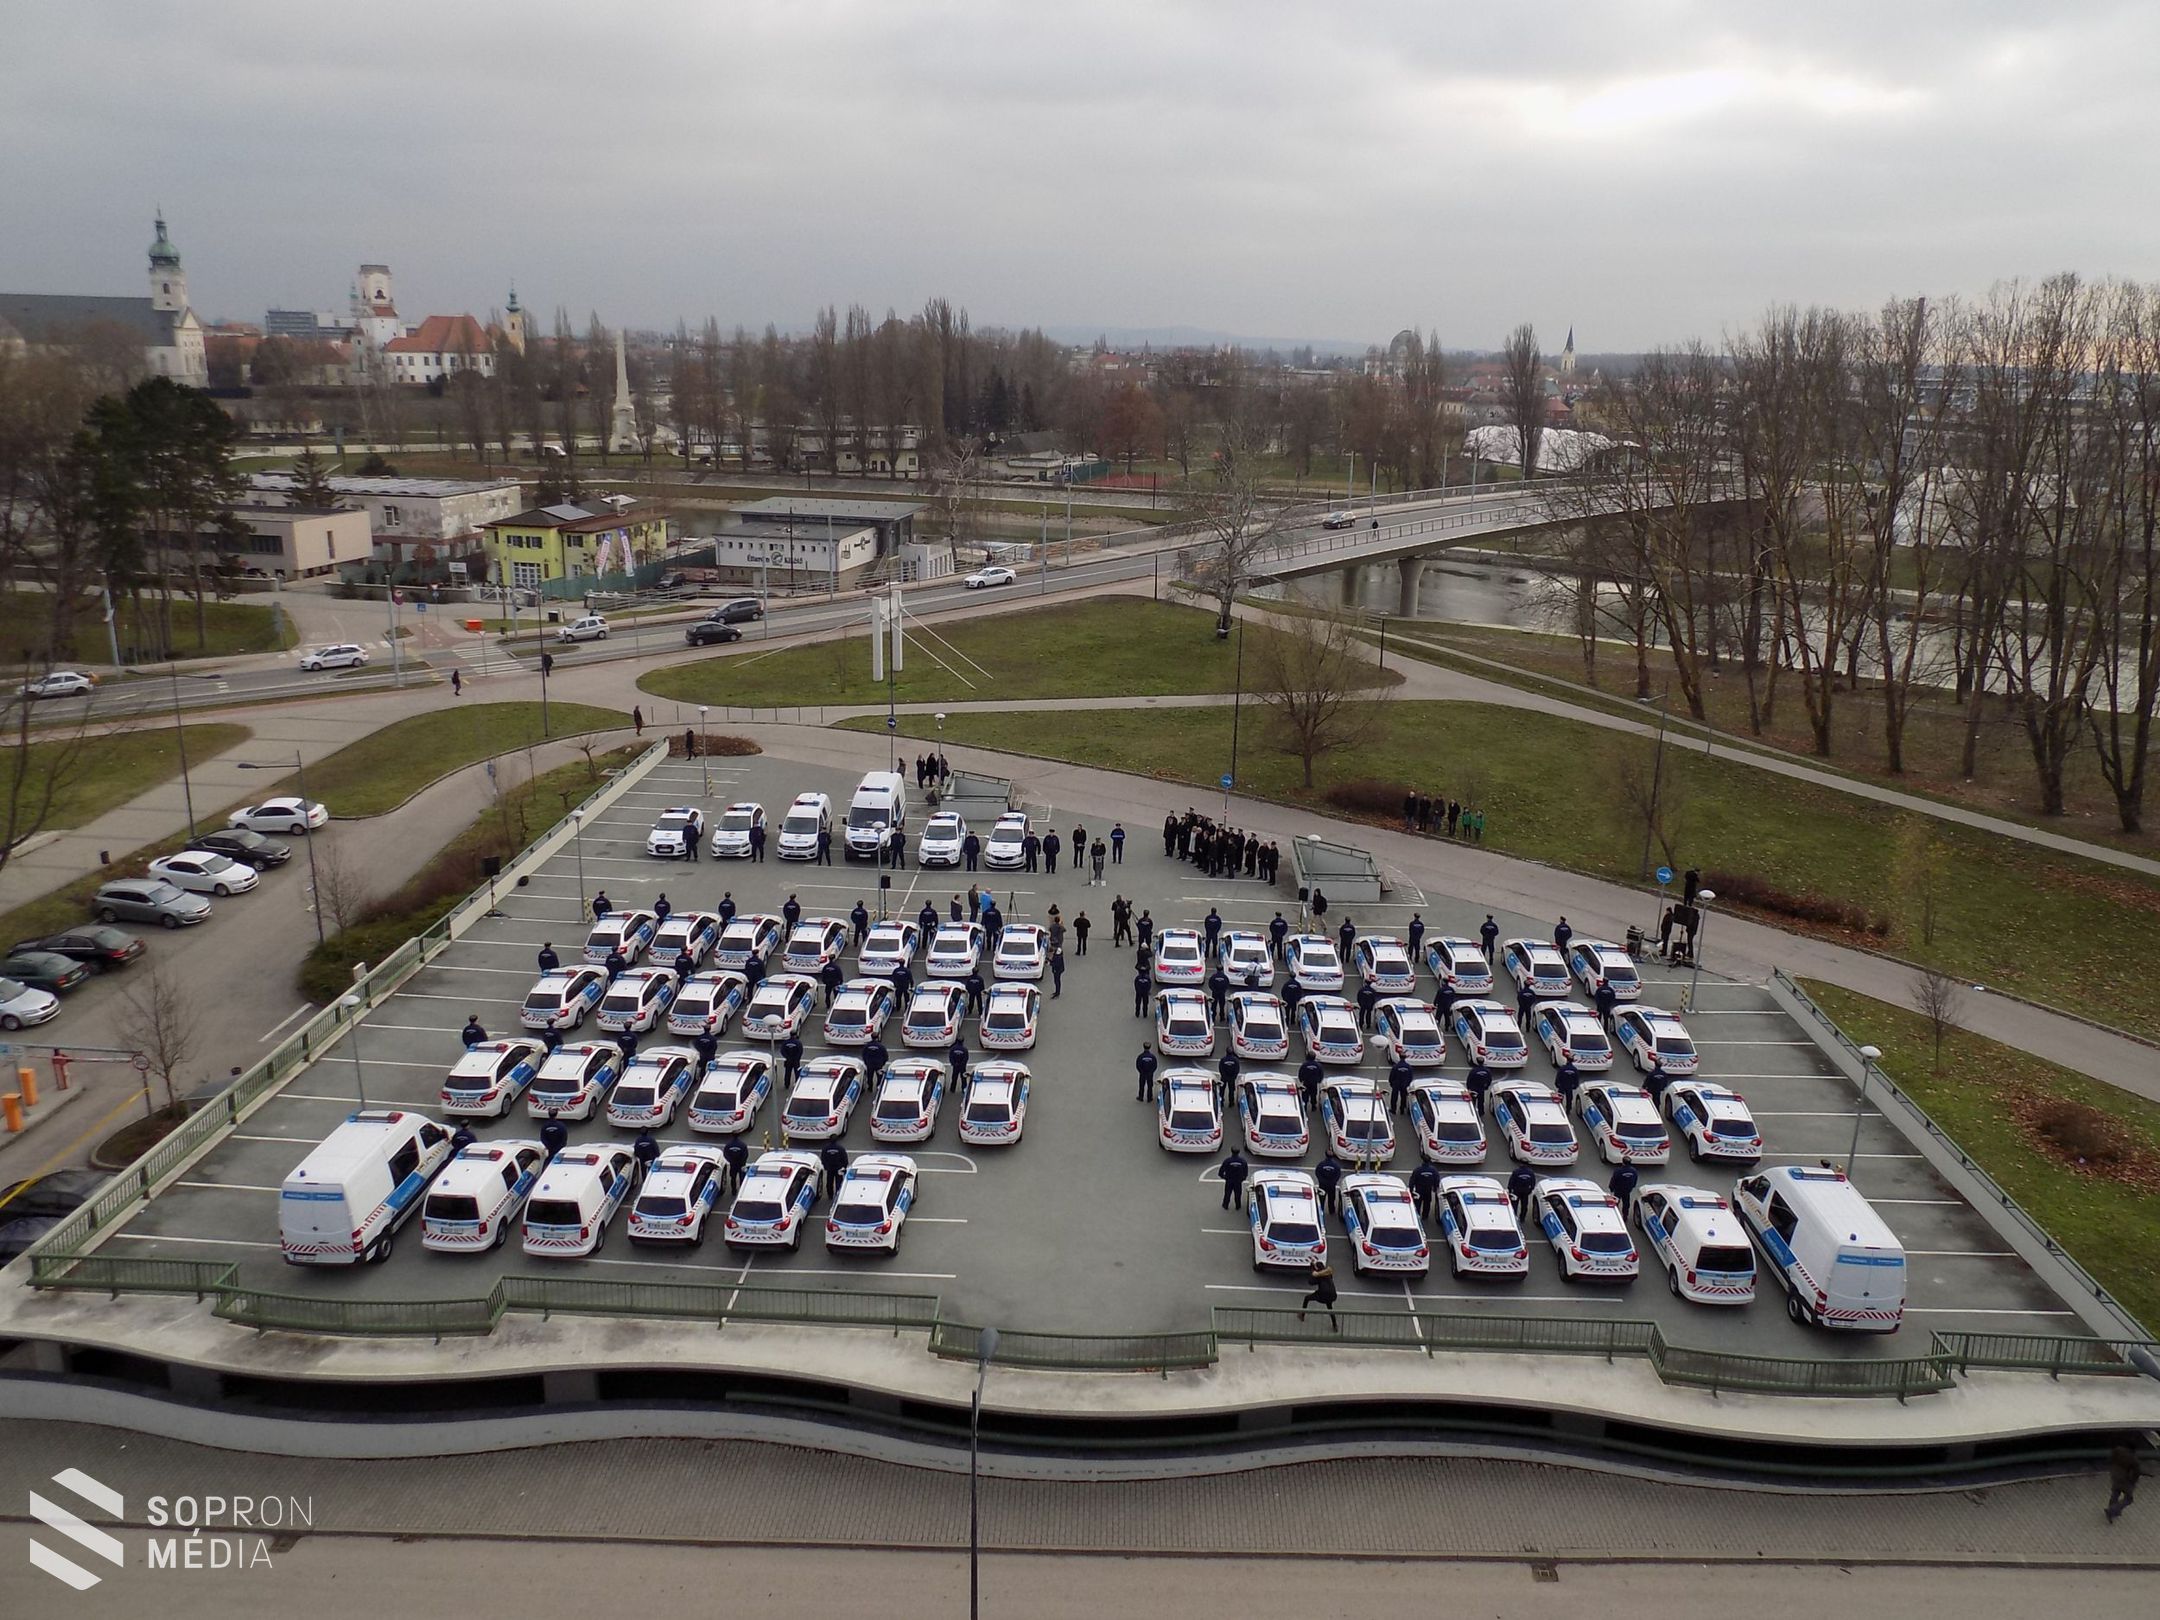 Új járőrgépjárműveket adott át Győr-Moson-Sopron megye rendőrfőkapitánya

